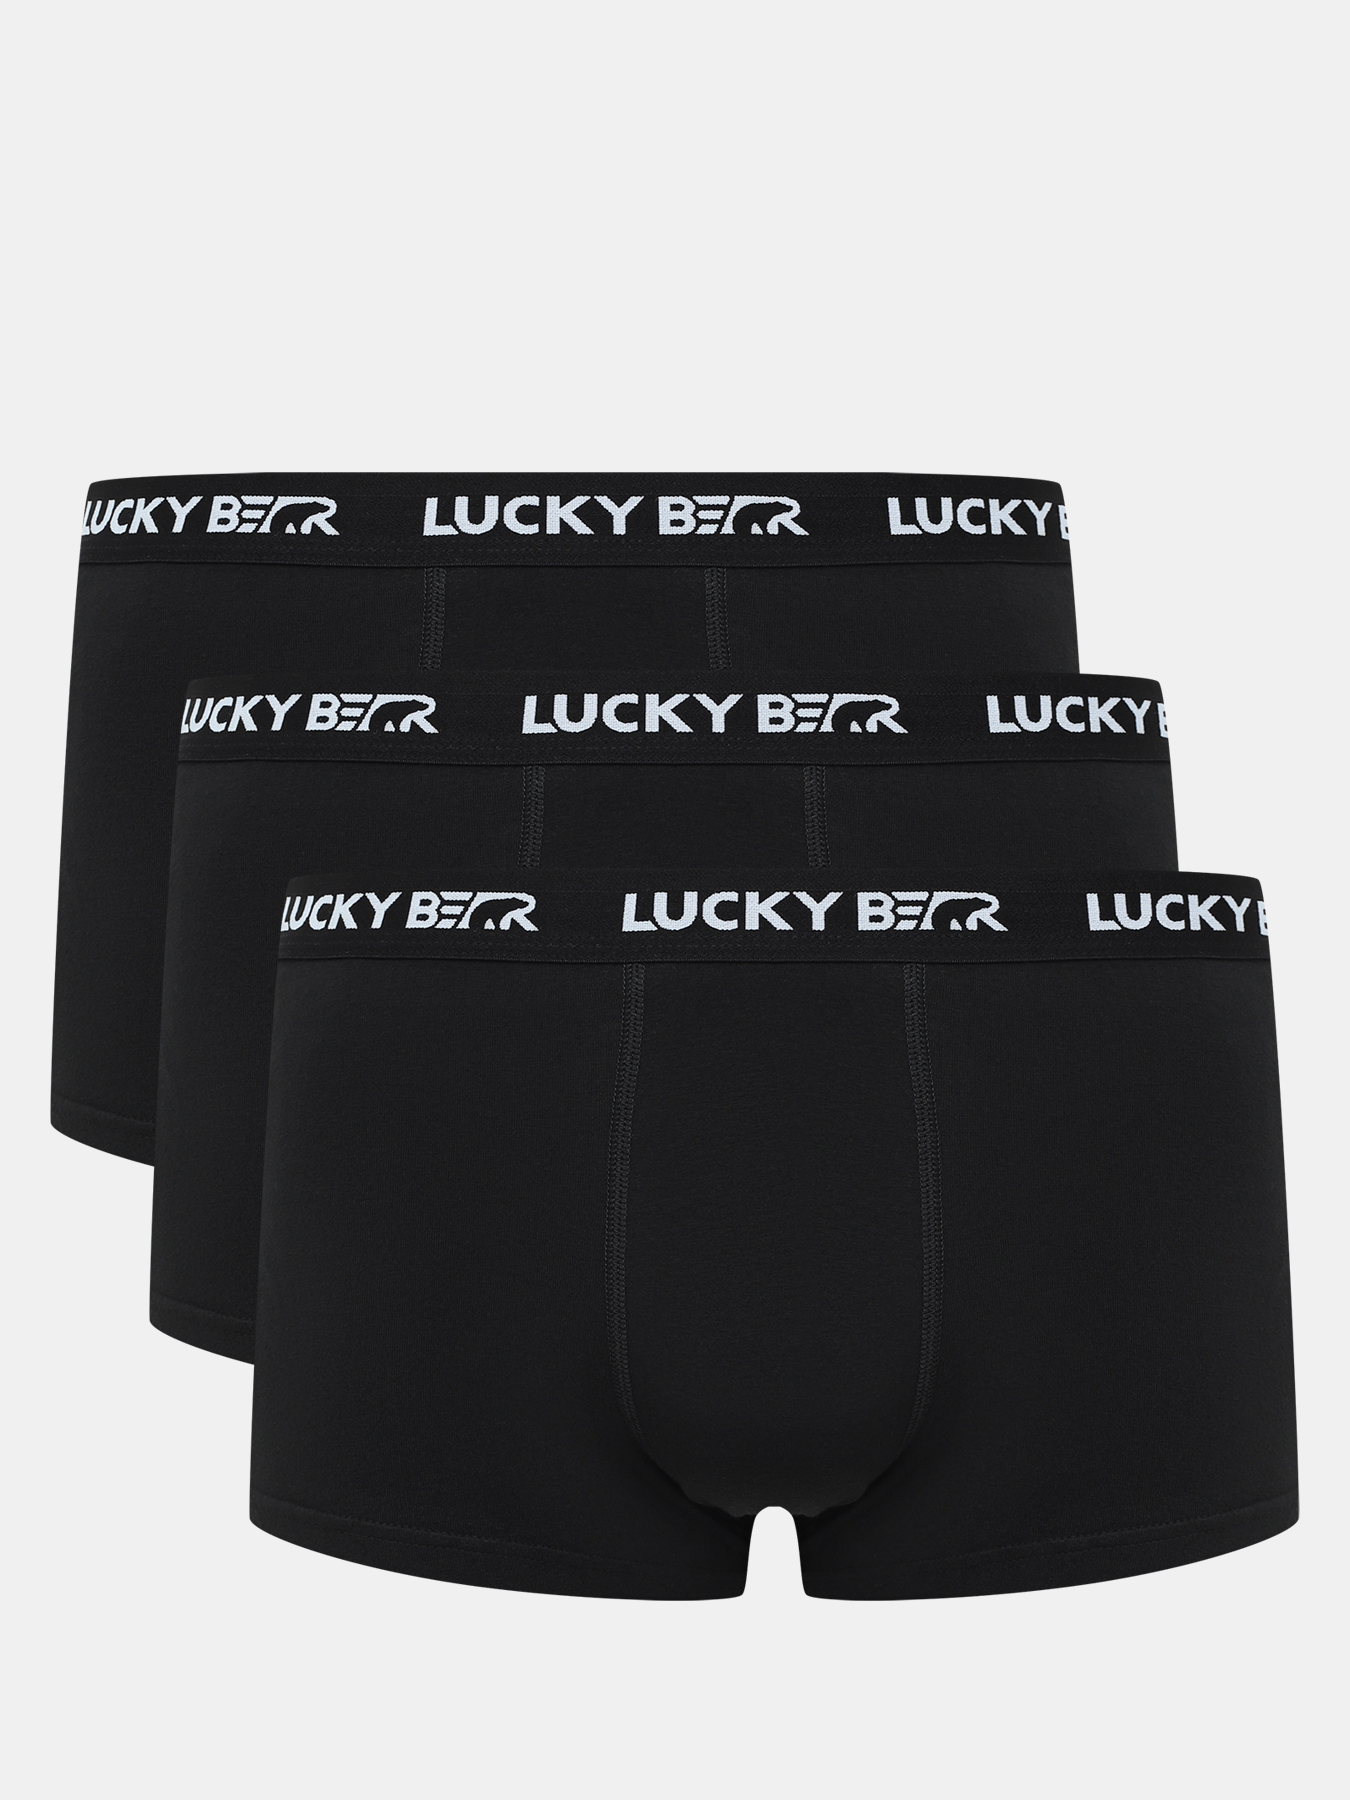 Комплект трусов мужских Lucky Bear 450596 черных L